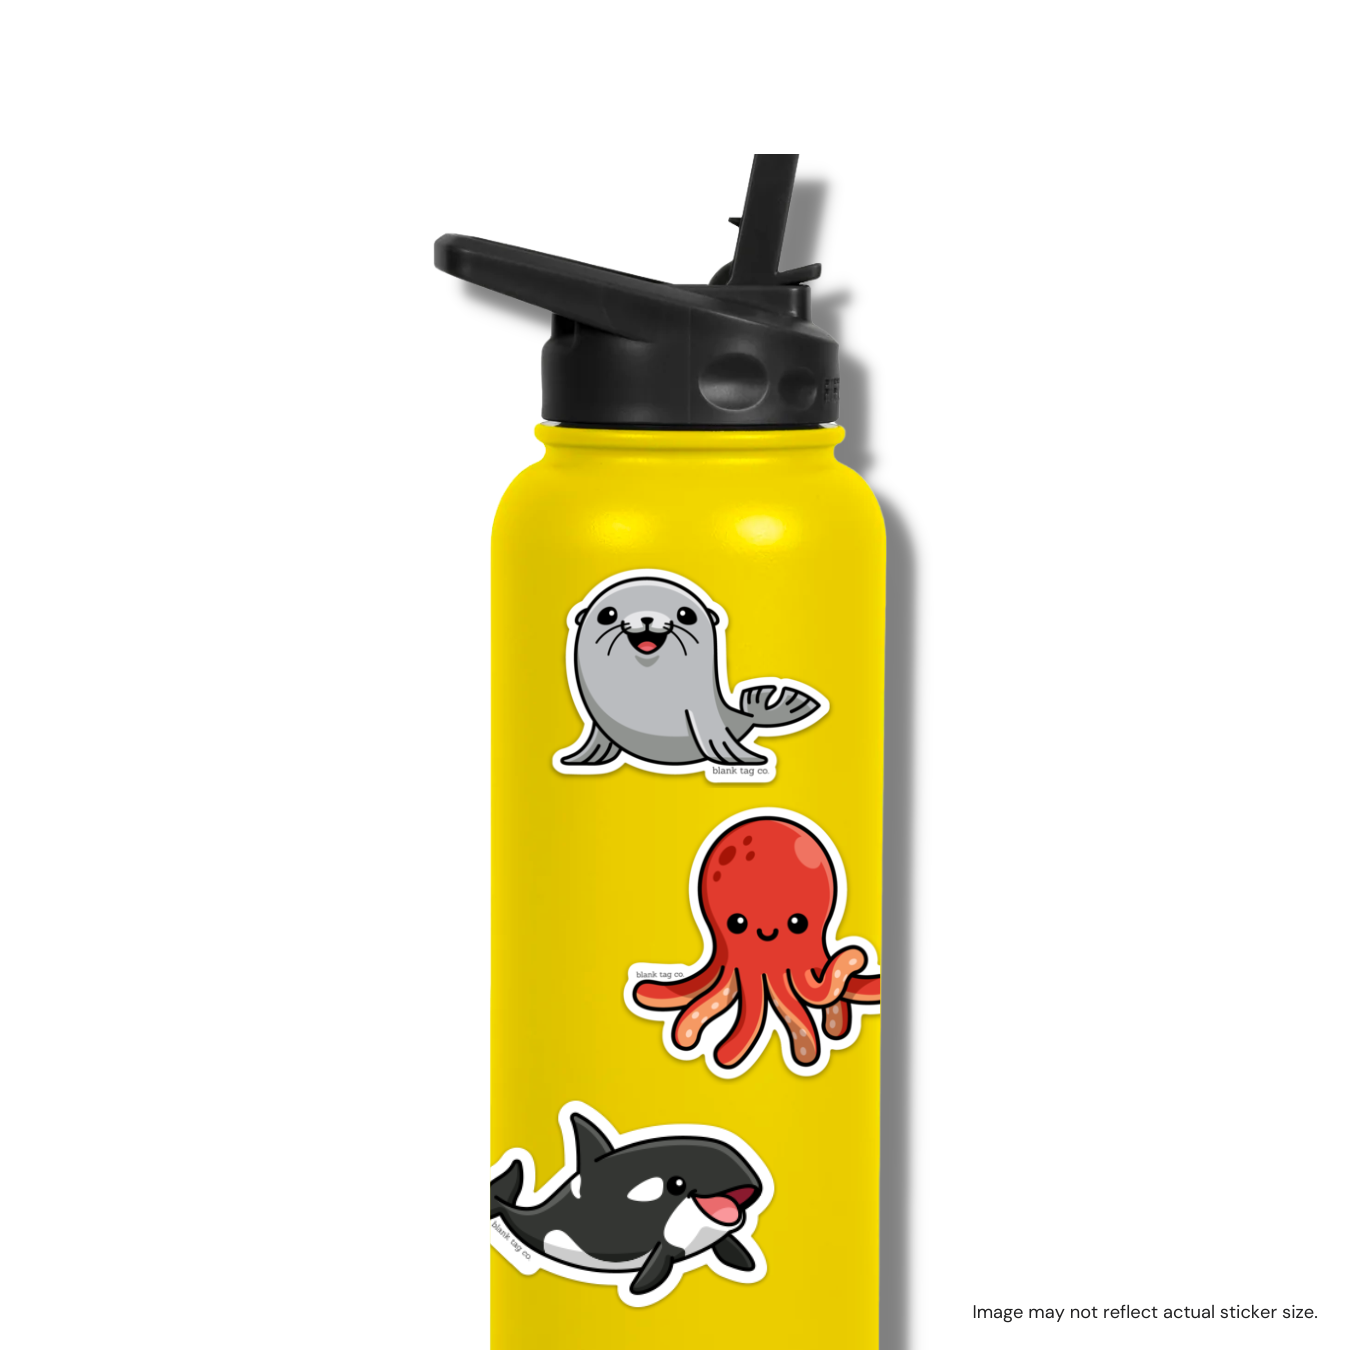 The Sea Lion Sticker